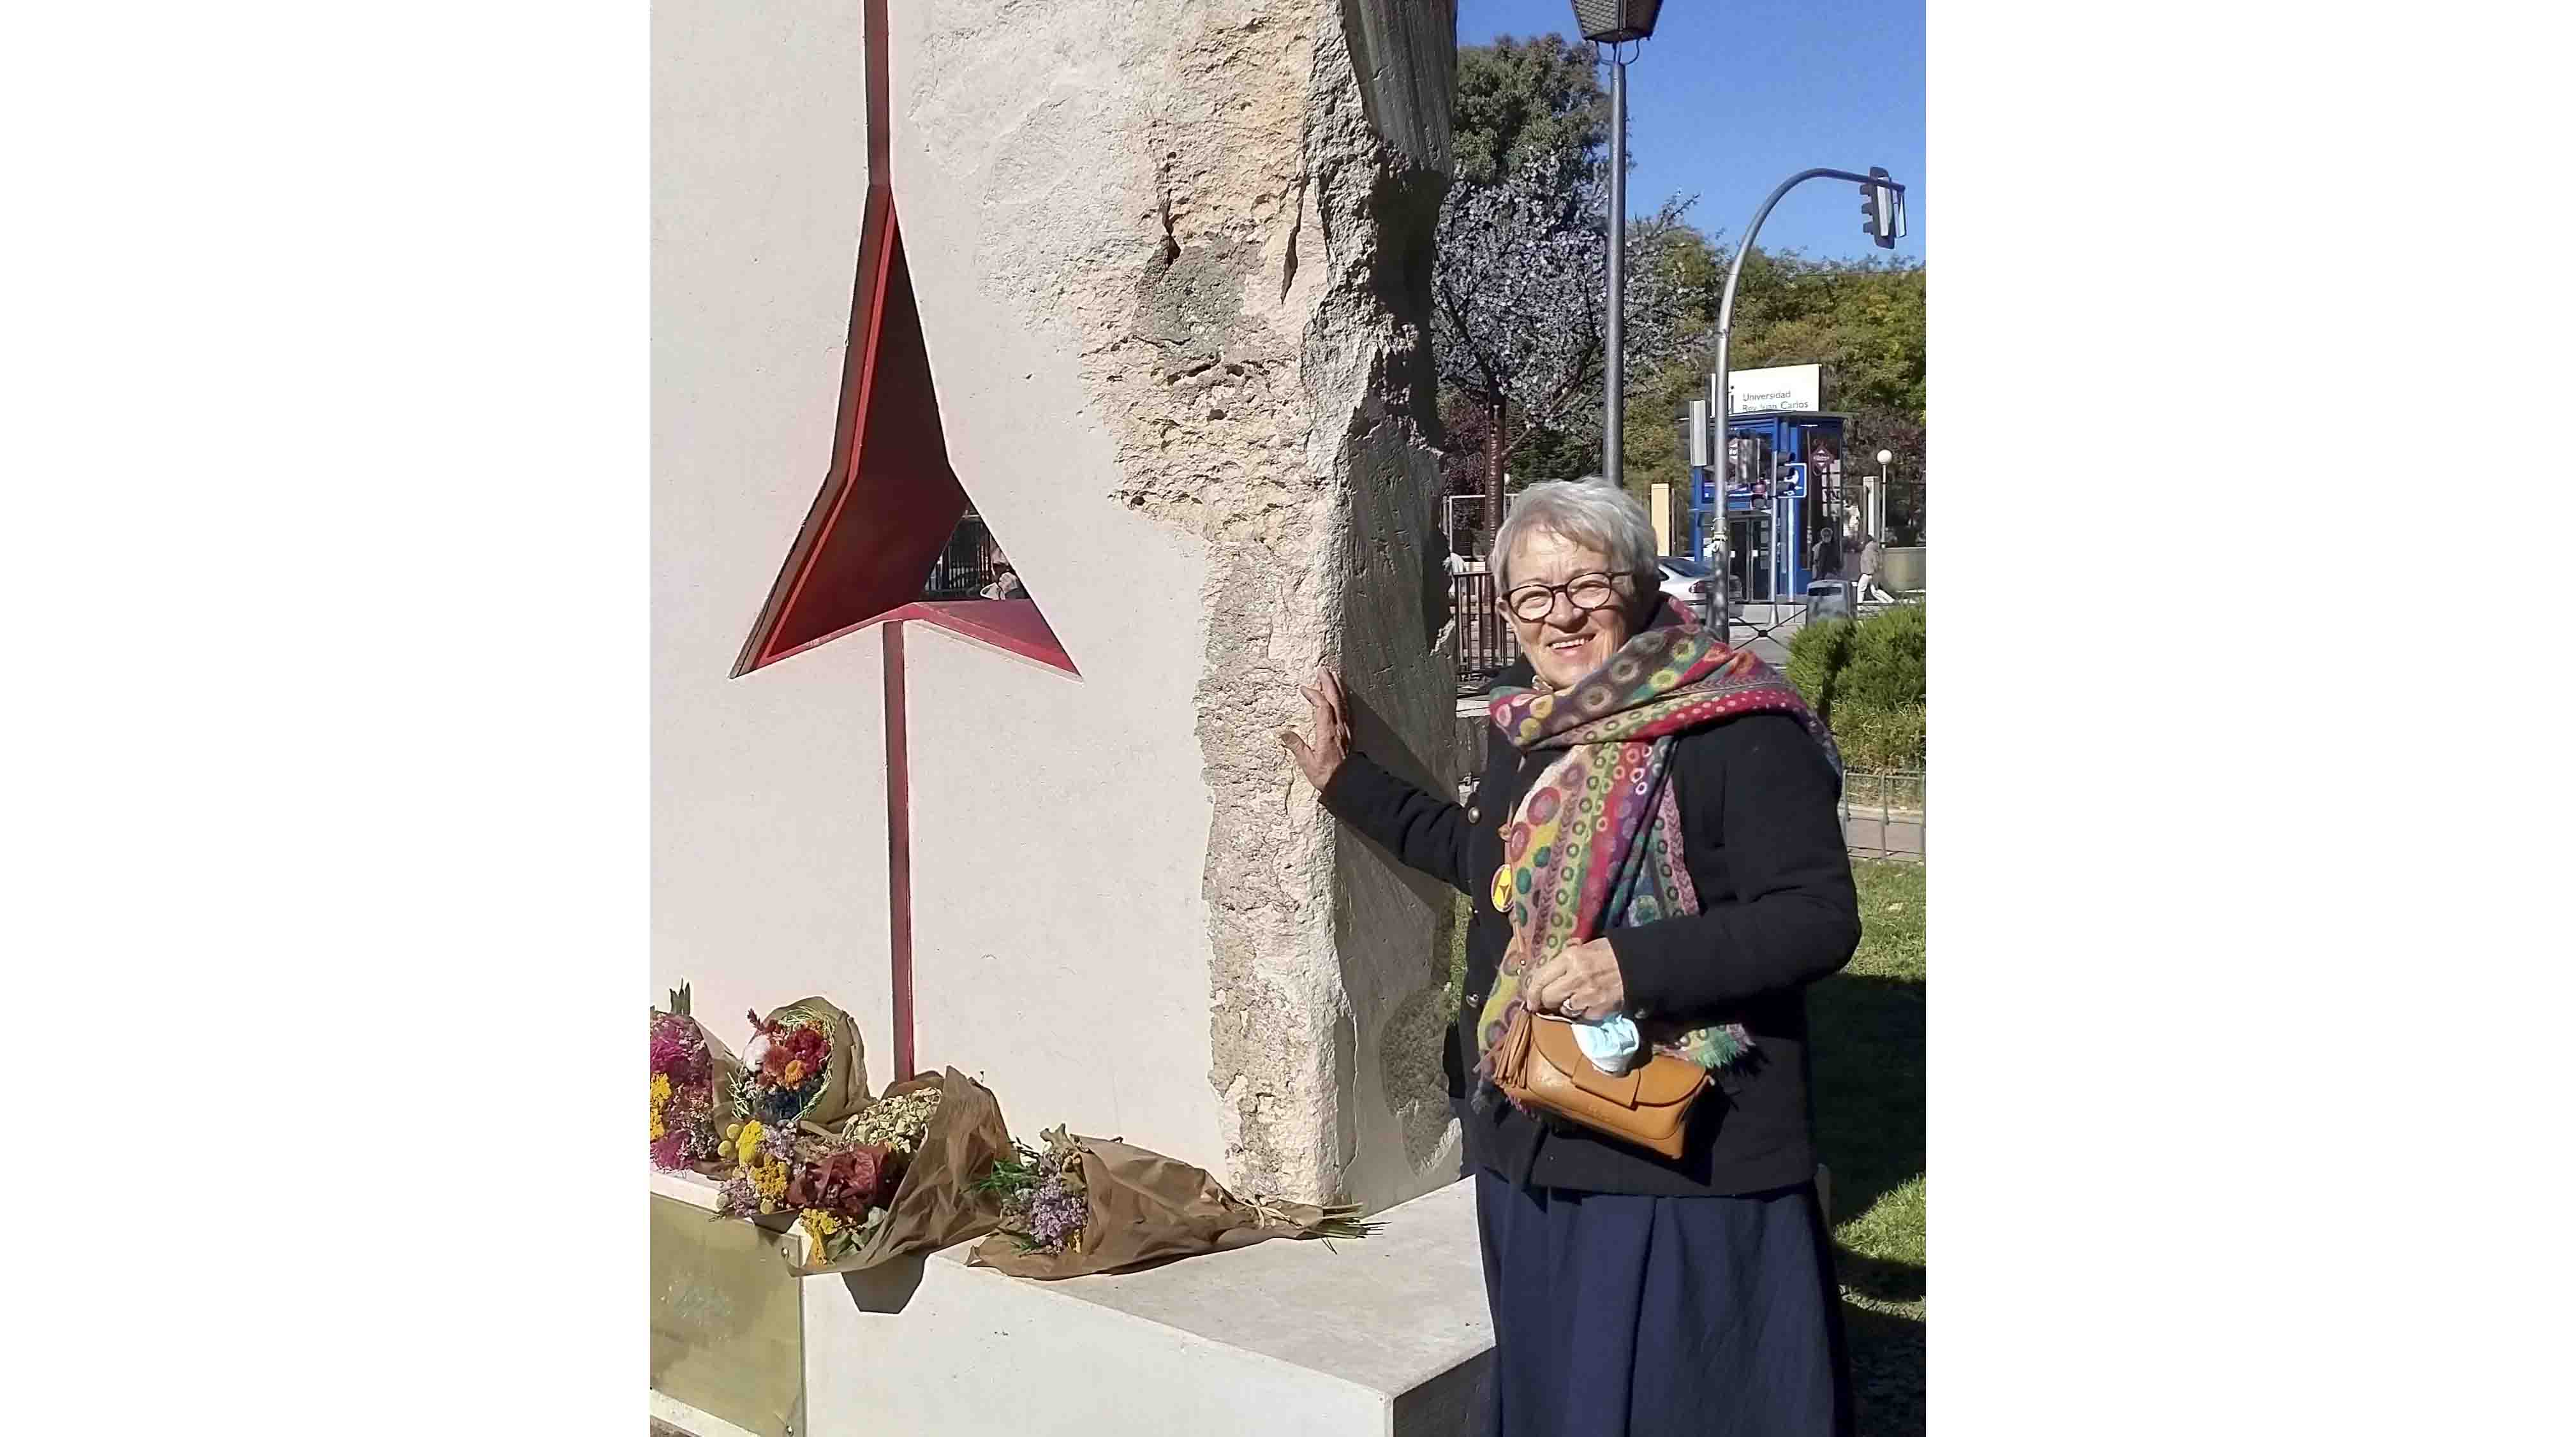 MADRID, 31/05/2023.- Victoria Pacha -hija de Eugenio Pacha, español que ejerció como comisario político - posa junto a junto a un monumento a las Brigadas Internacionales en Vicálvaro (Madrid) el pasado mes de noviembre de 2021. Victoria Pacha tiene 77 años, nació en Francia y desde allí acompañó a sus padres por un largo periplo que los llevó a Argelia, Hungría y desde 1963 a Cuba. La Ley de Memoria permite solicitar la nacionalidad española a hijos y nietos de exiliados, pero también a los descendientes de miembros de las Brigadas Internacionales, algunos de los cuales denuncian a EFE dificultades en los consulados para gestionar un proceso que emprenden por un motivo "sentimental". EFE/Victoria Pacha SOLO USO EDITORIAL/SOLO DISPONIBLE PARA ILUSTRAR LA NOTICIA QUE ACOMPAÑA (CRÉDITO OBLIGATORIO)
